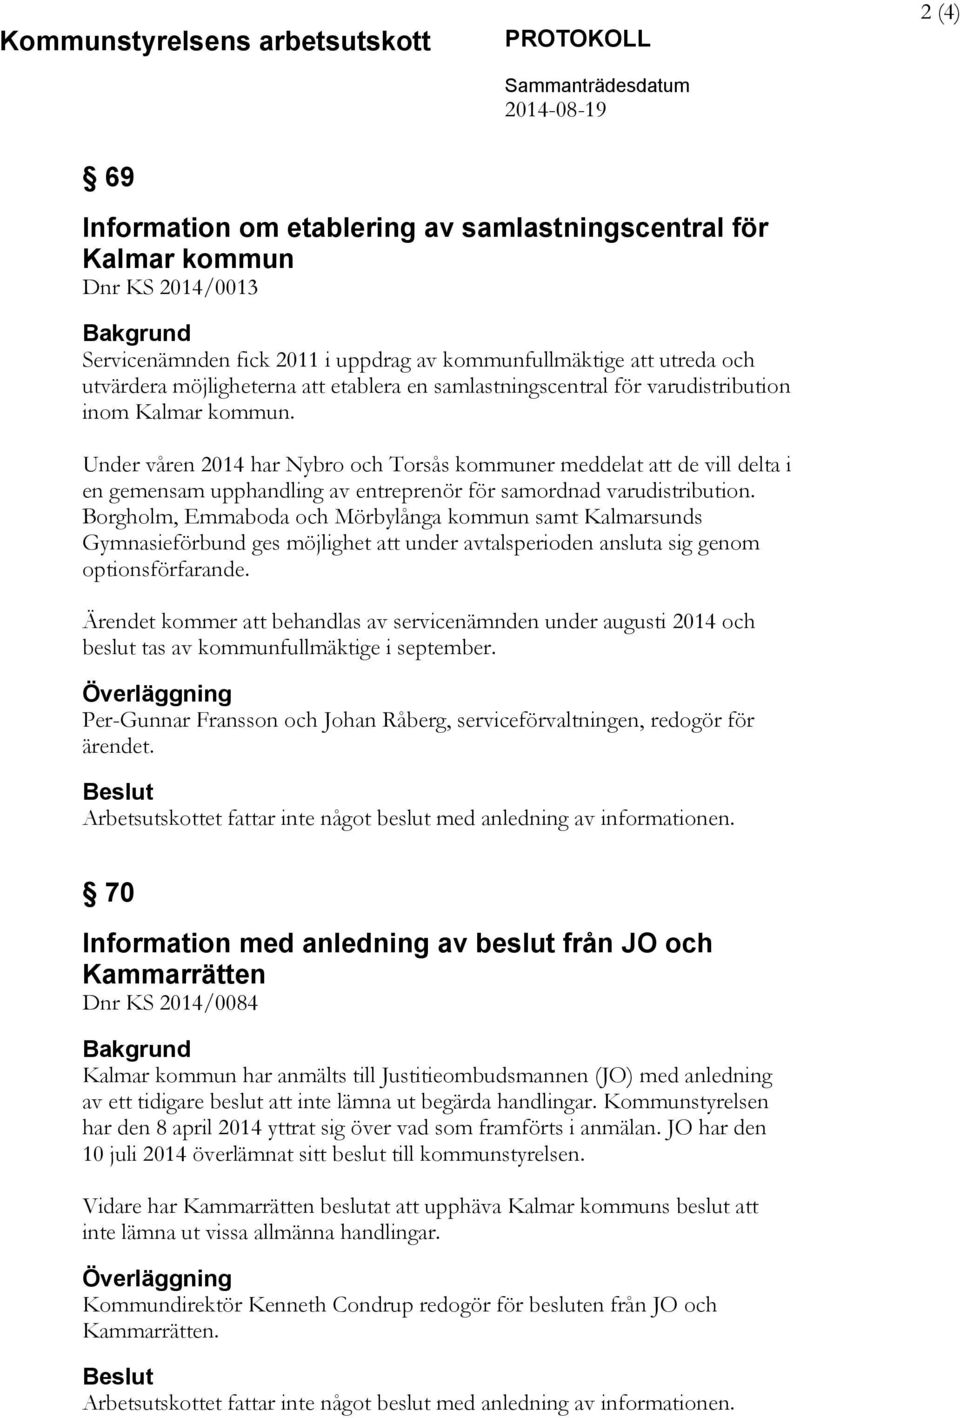 Under våren 2014 har Nybro och Torsås kommuner meddelat att de vill delta i en gemensam upphandling av entreprenör för samordnad varudistribution.